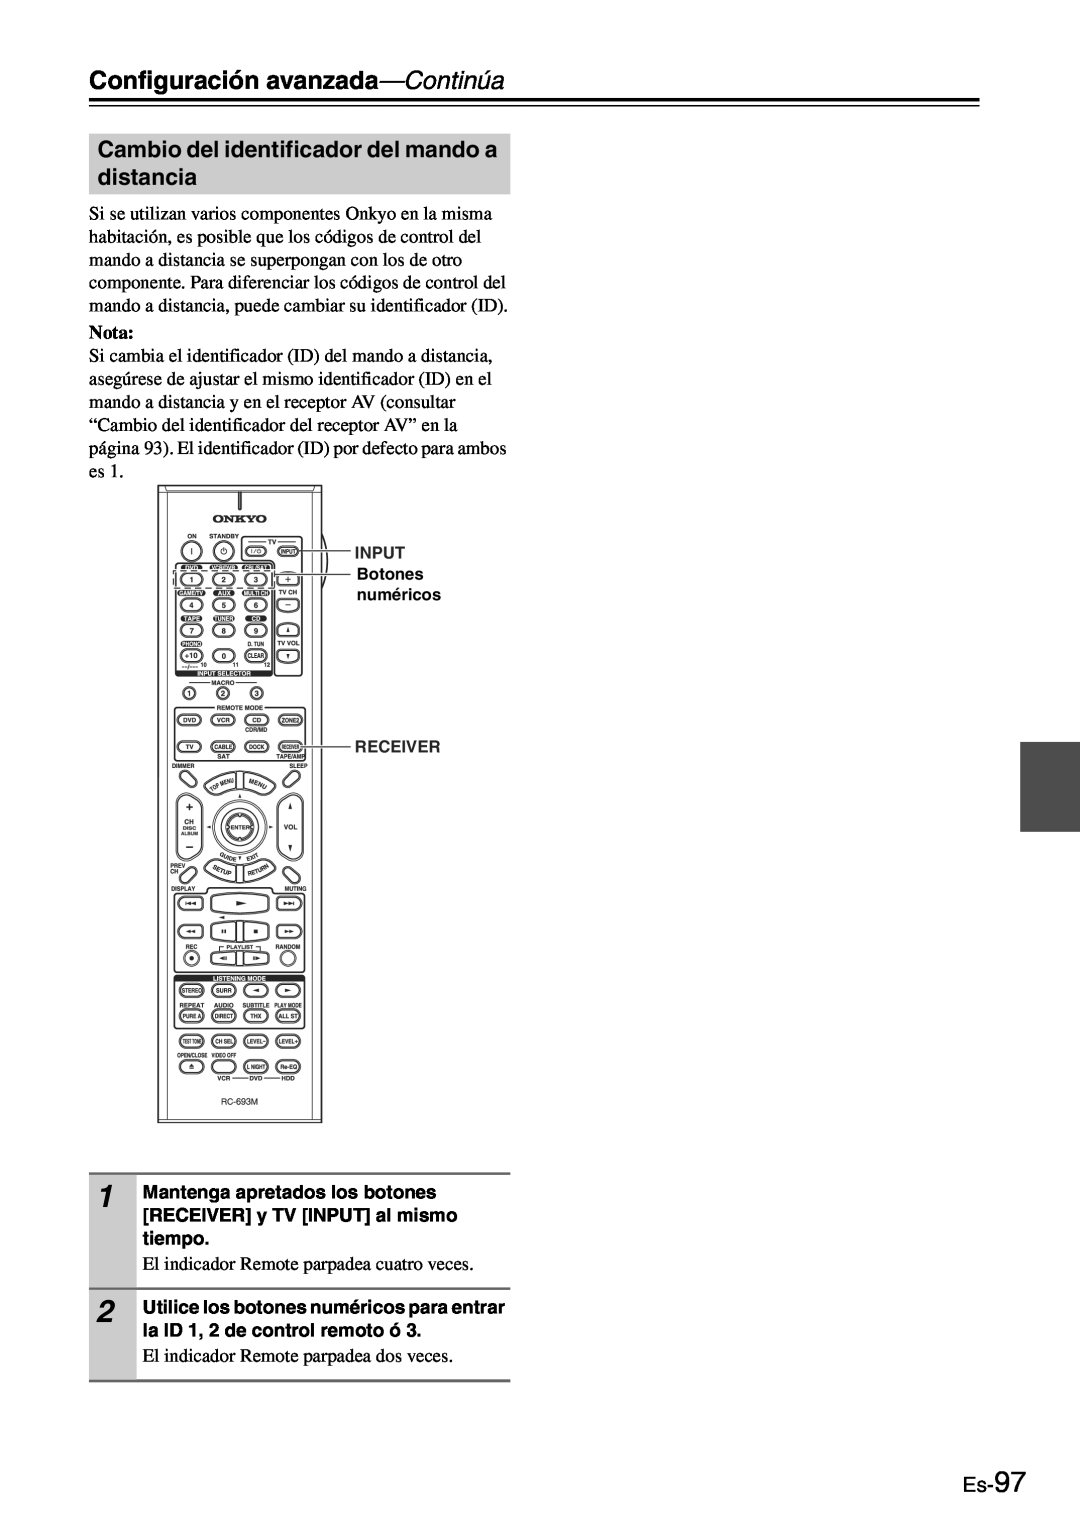 Onkyo TX-SR705 manual Cambio del identificador del mando a distancia, Es-97, Configuración avanzada—Continúa, Nota 